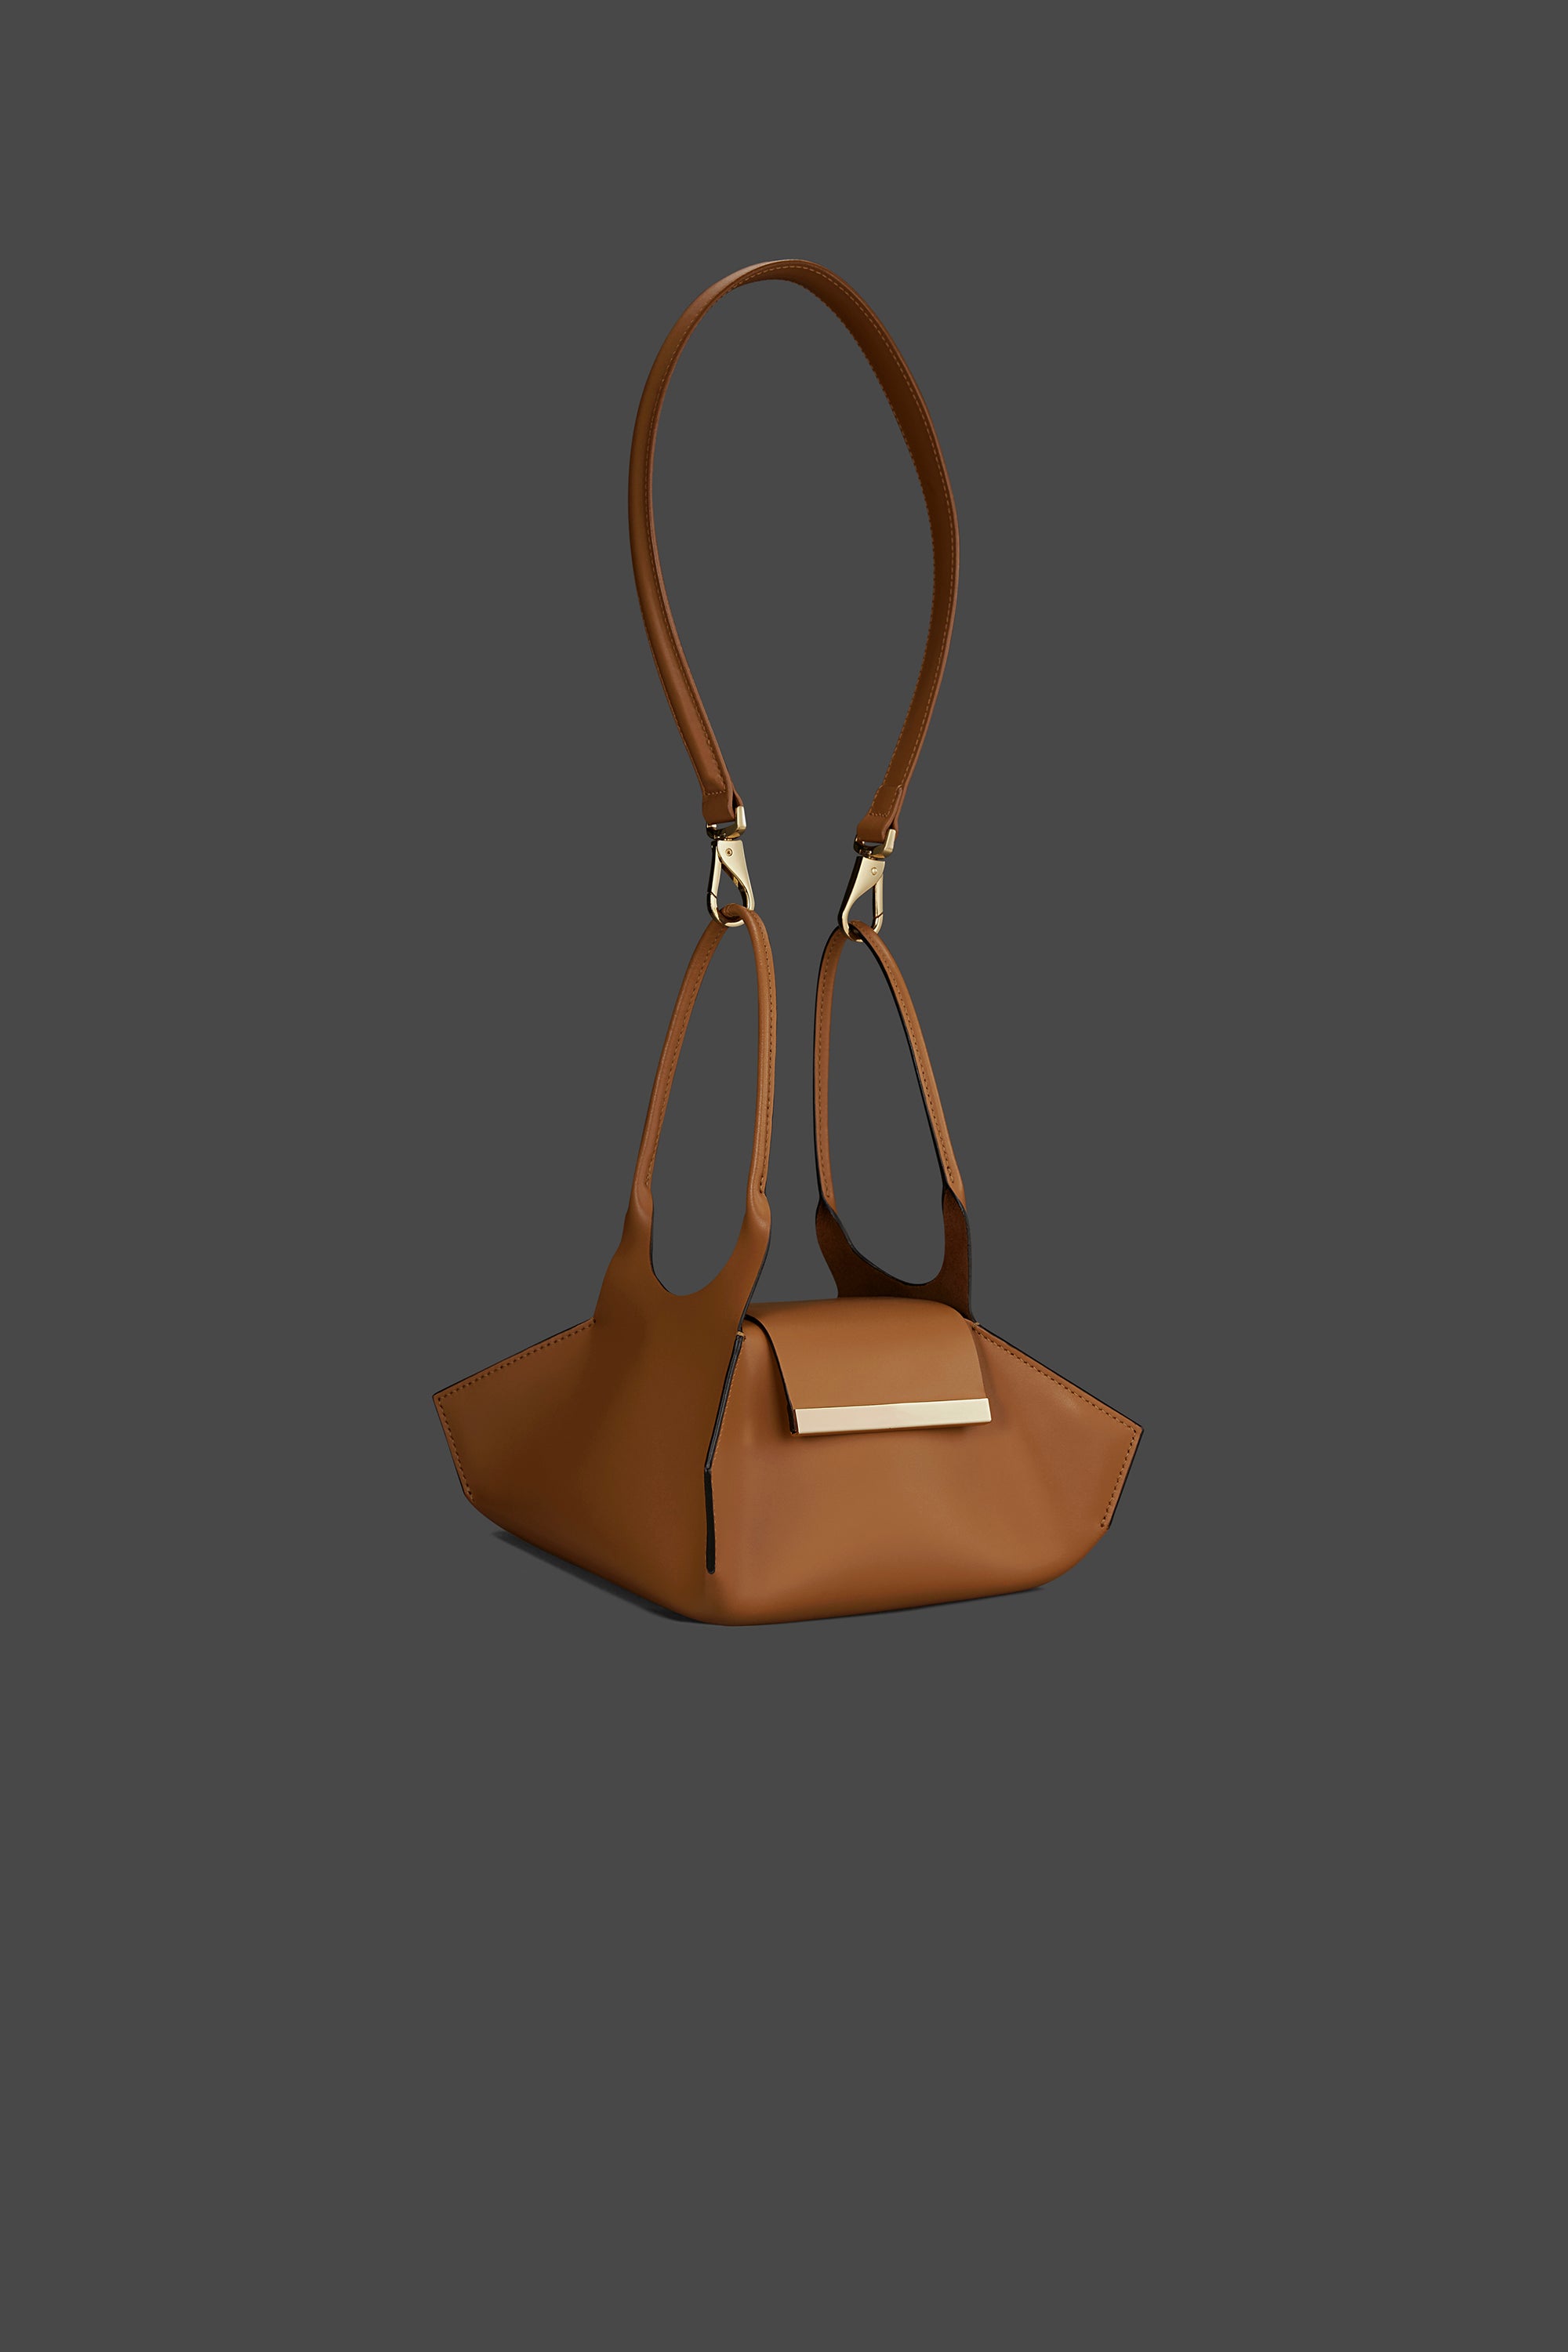 Dior Saddle Bag Mint Green Leather 3D model